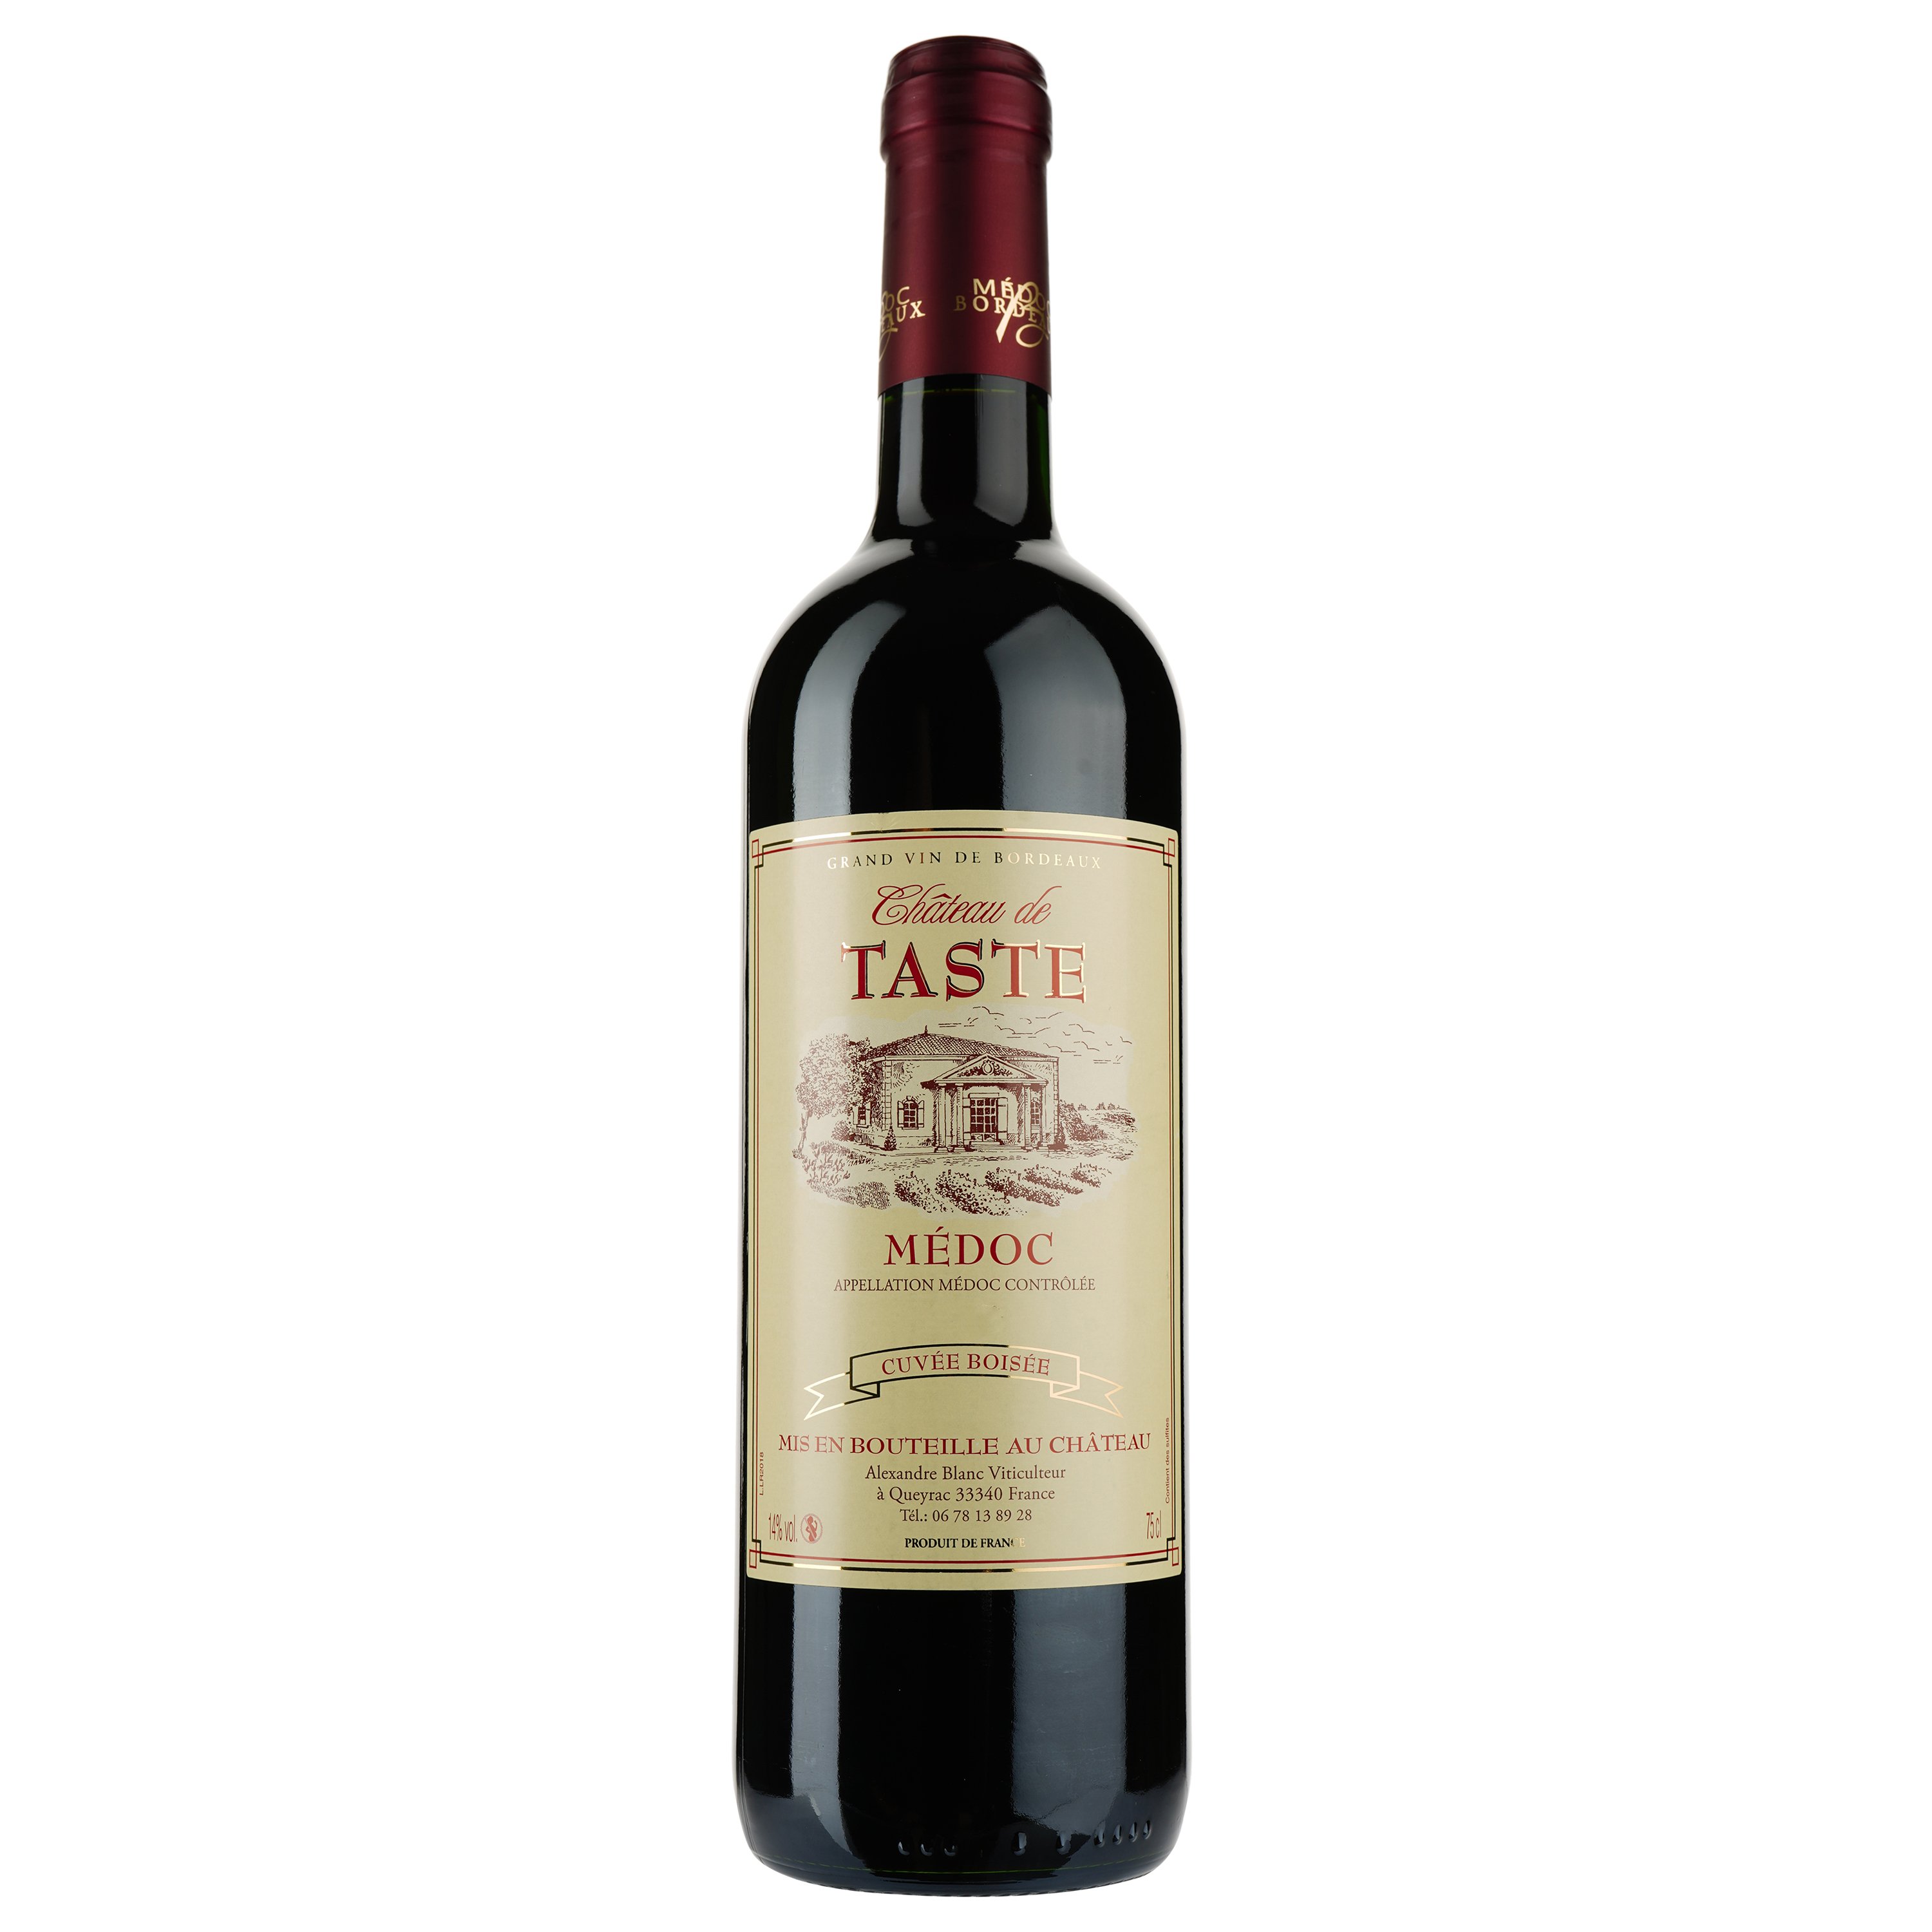 Вино Chateau de Taste AOP Medoc 2018, красное, сухое, 0,75 л - фото 1